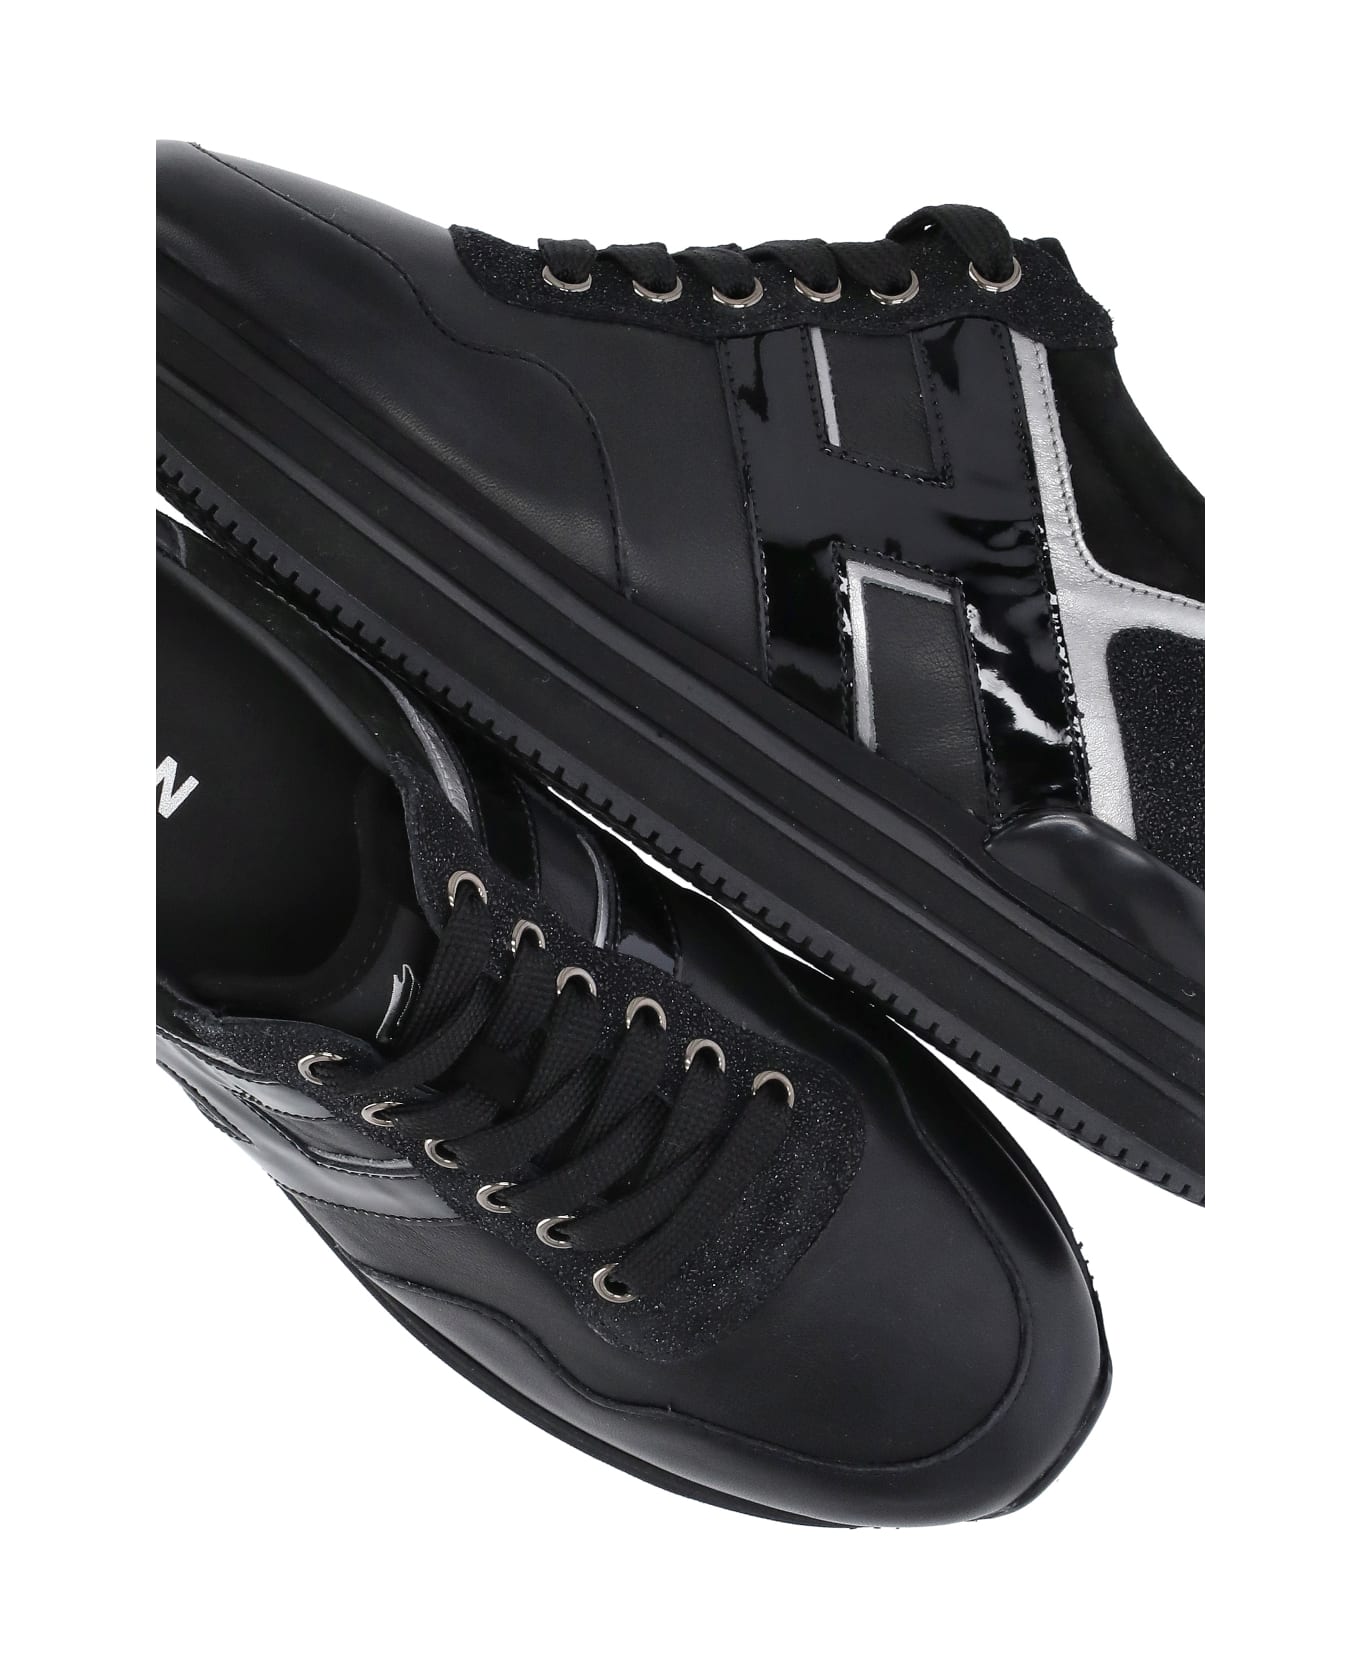 Hogan Midi H222 Sneakers - Black スニーカー